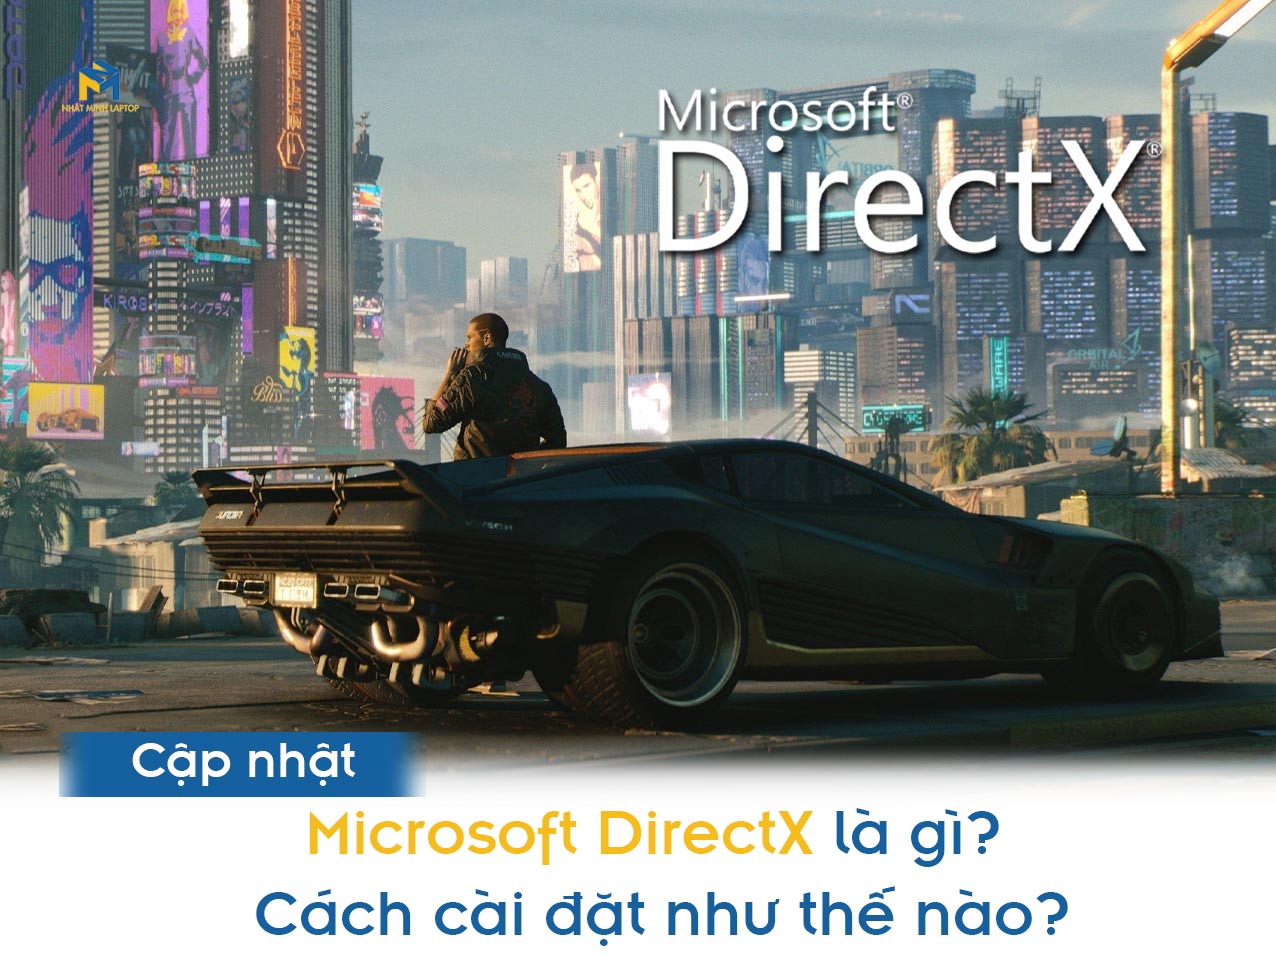 Microsoft DirectX là gì? Cách cài đặt như thế nào?